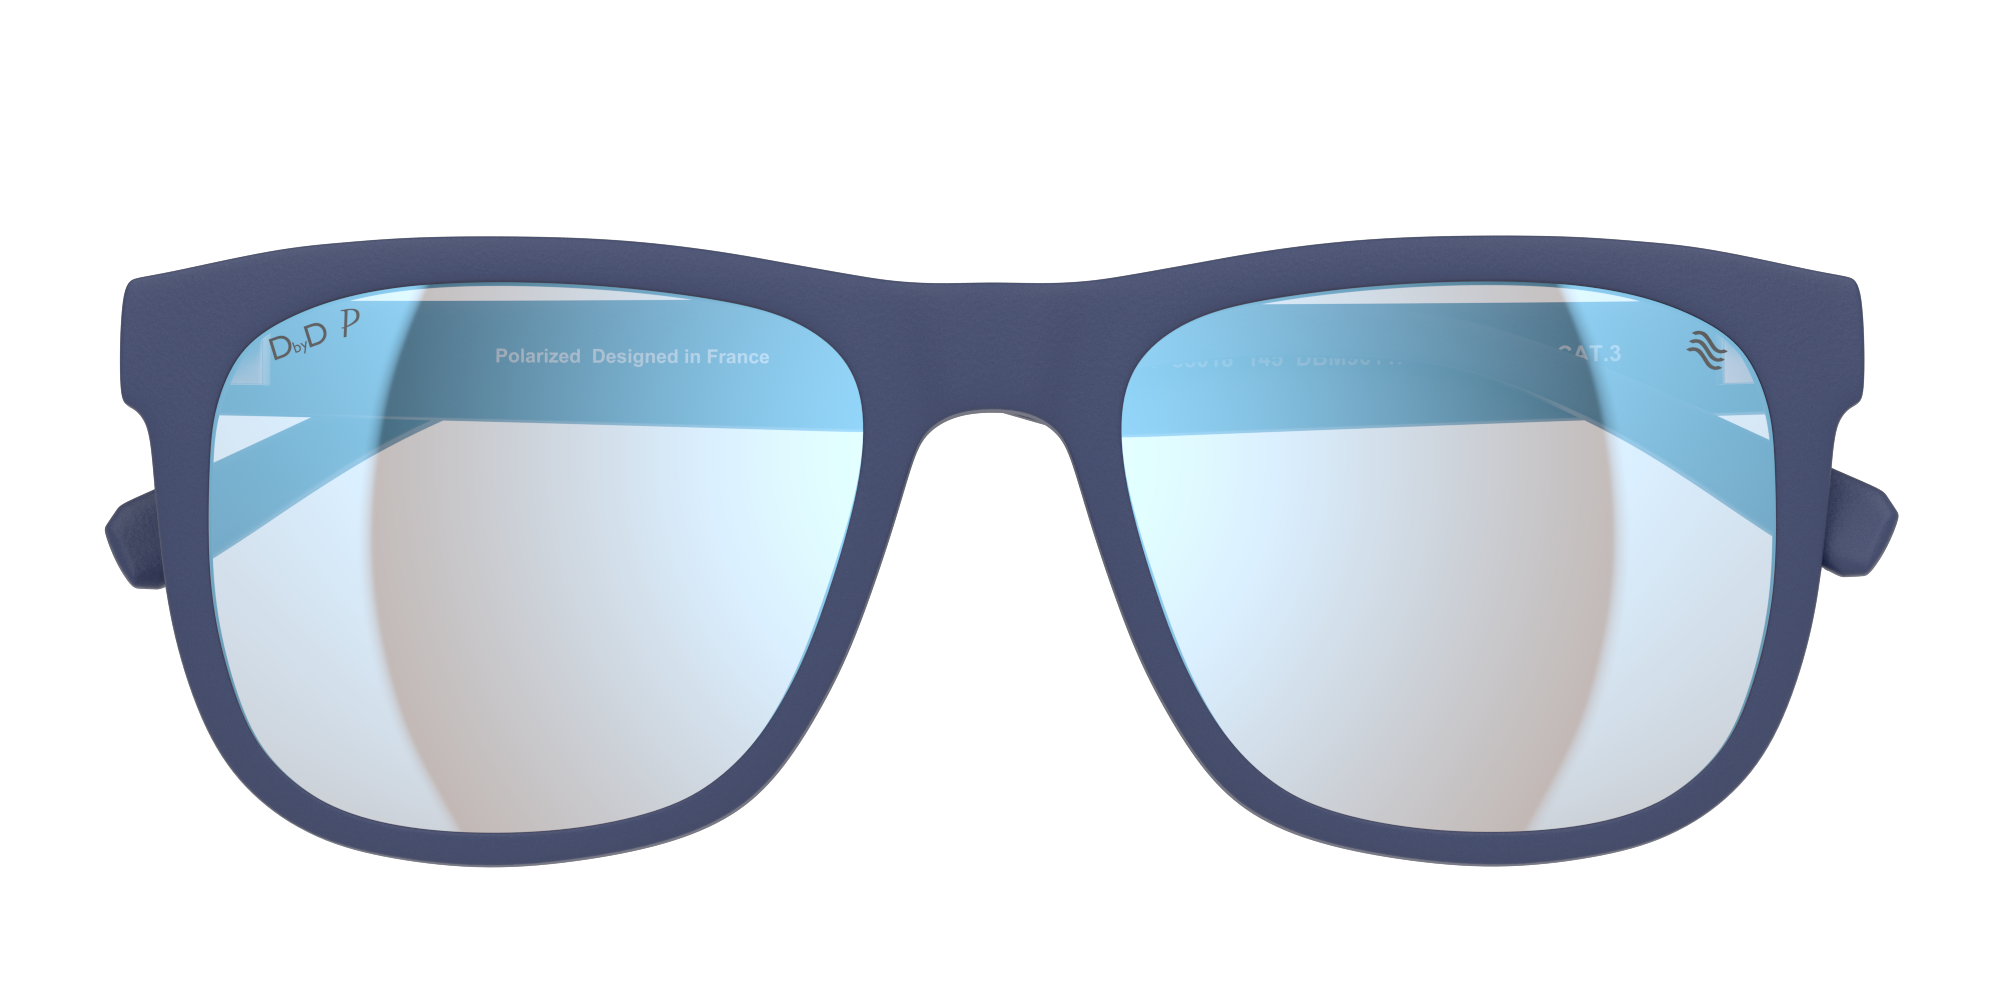 Folded DbyD Recycled DB SM9011P Sunglasses Grey / Blue